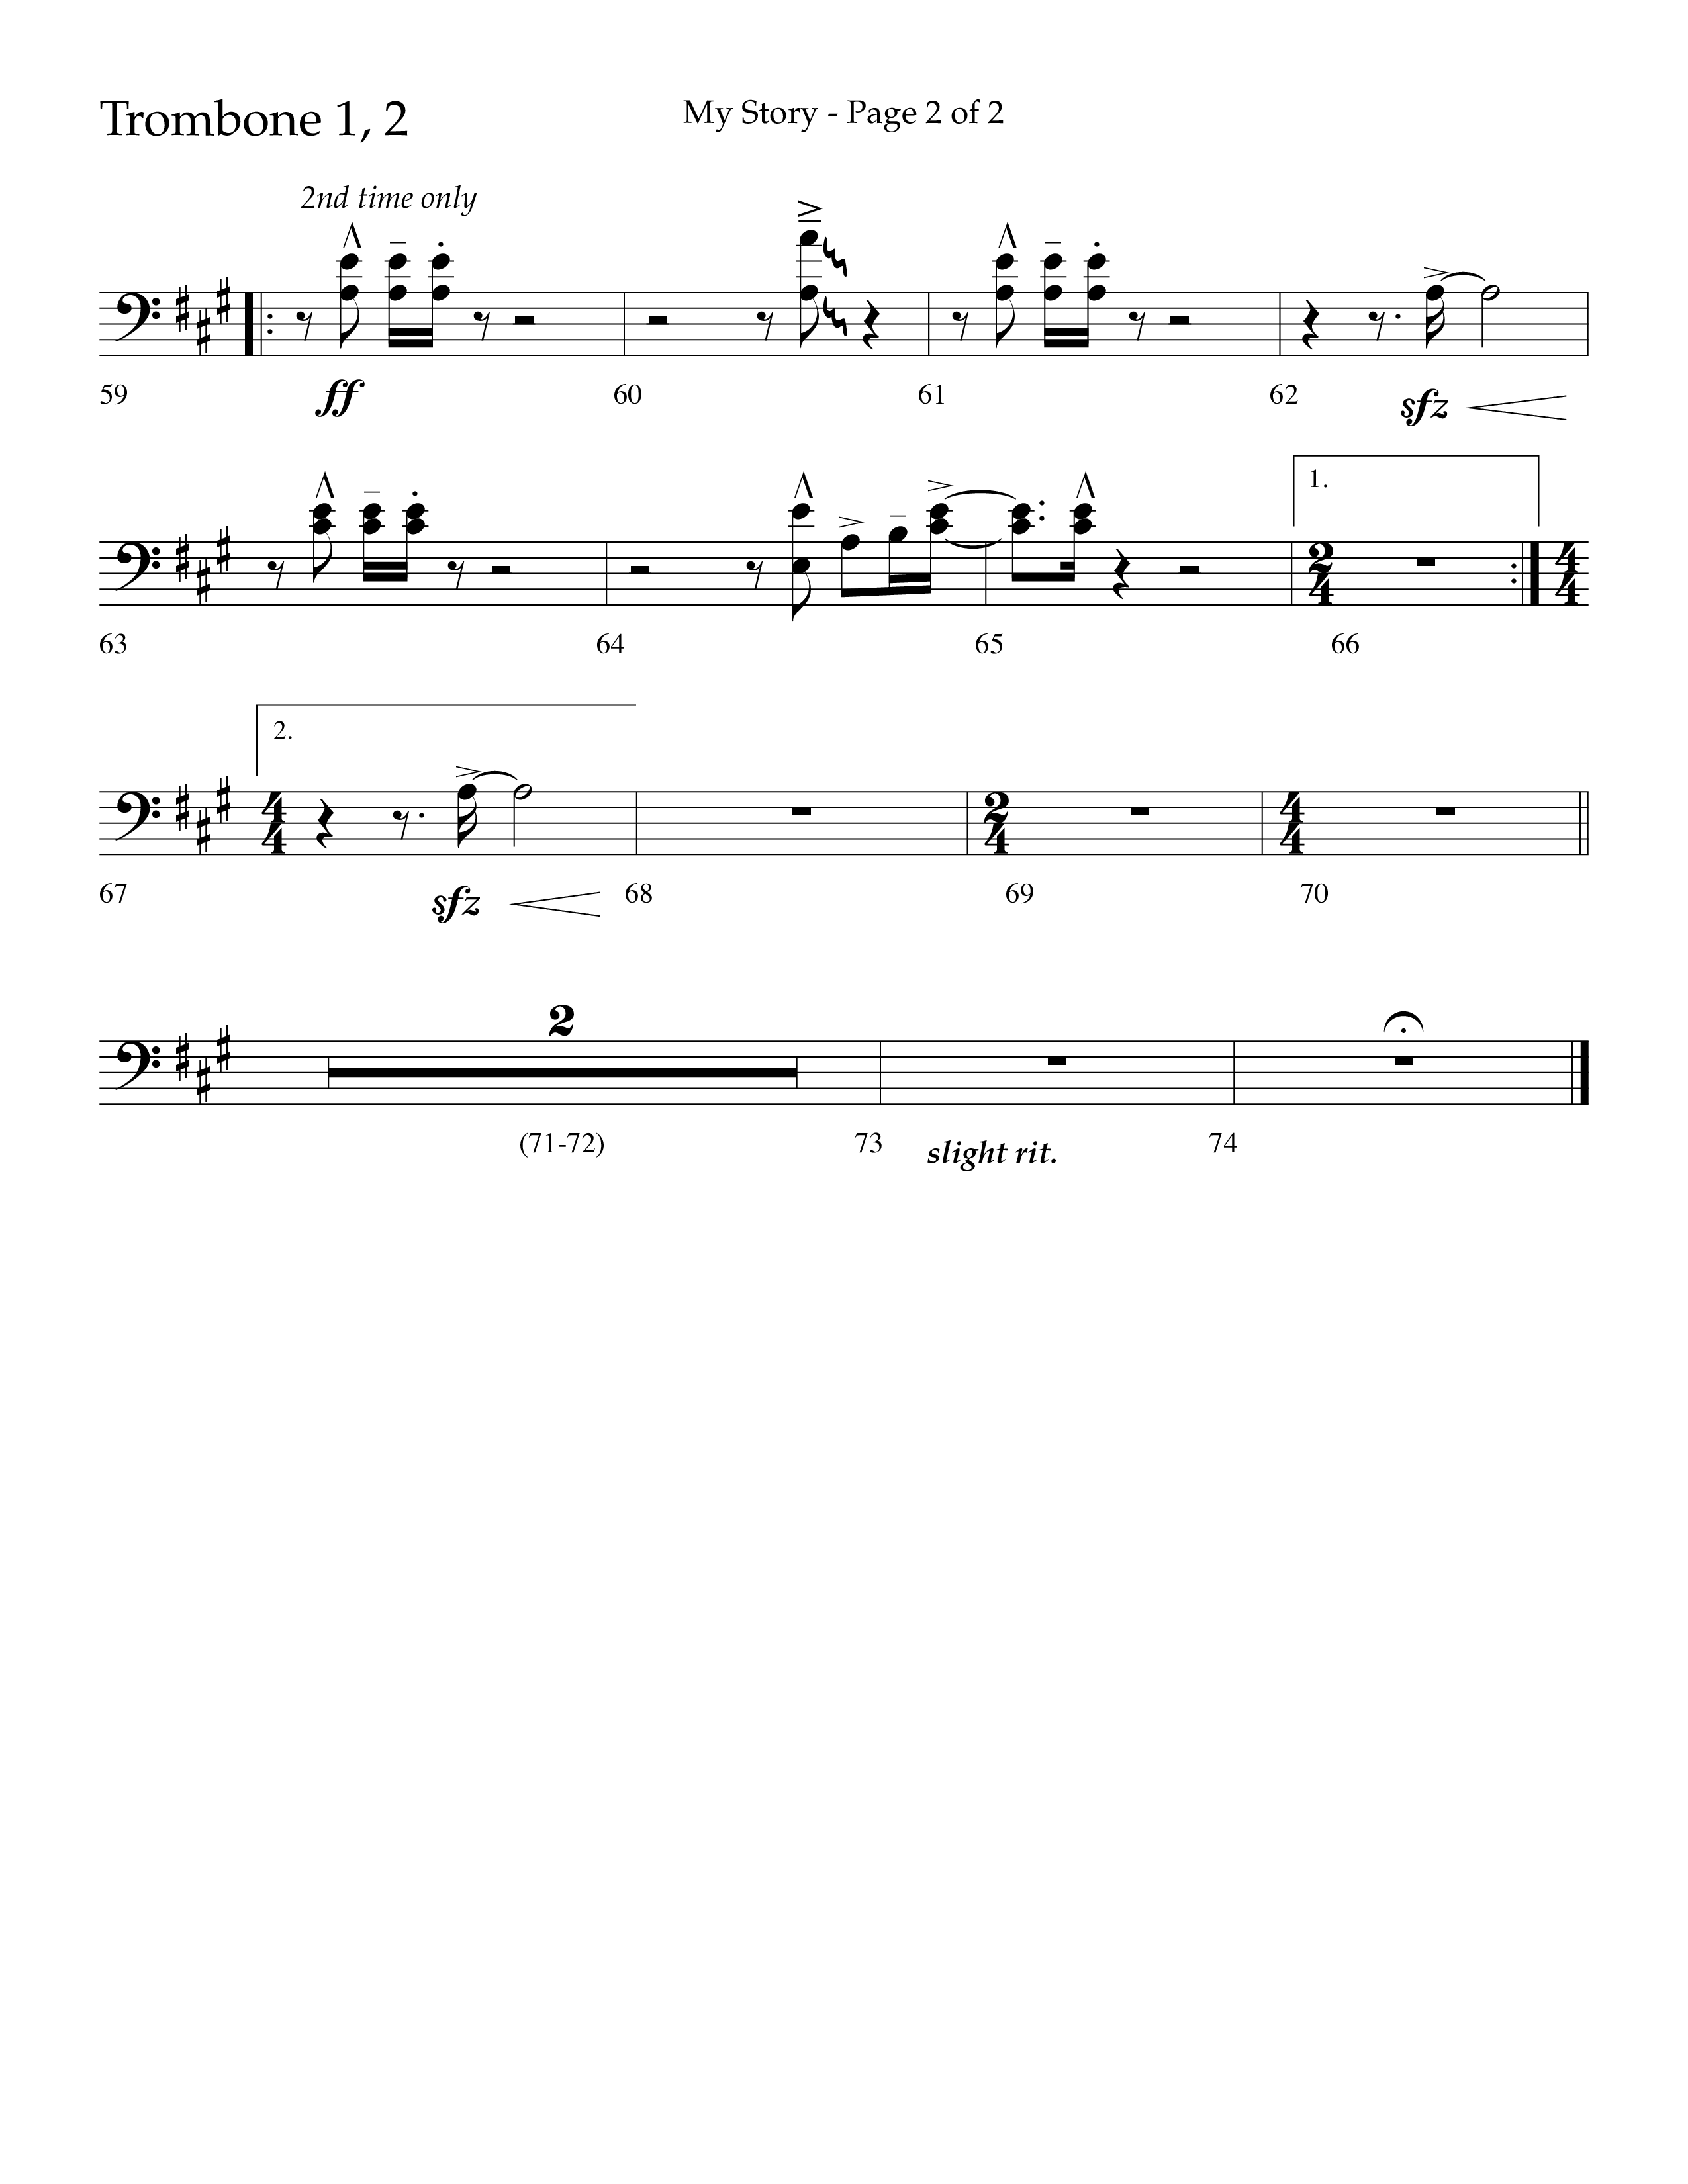 My Story (Choral Anthem SATB) Trombone 1/2 (Lifeway Choral / Arr. Craig Adams)